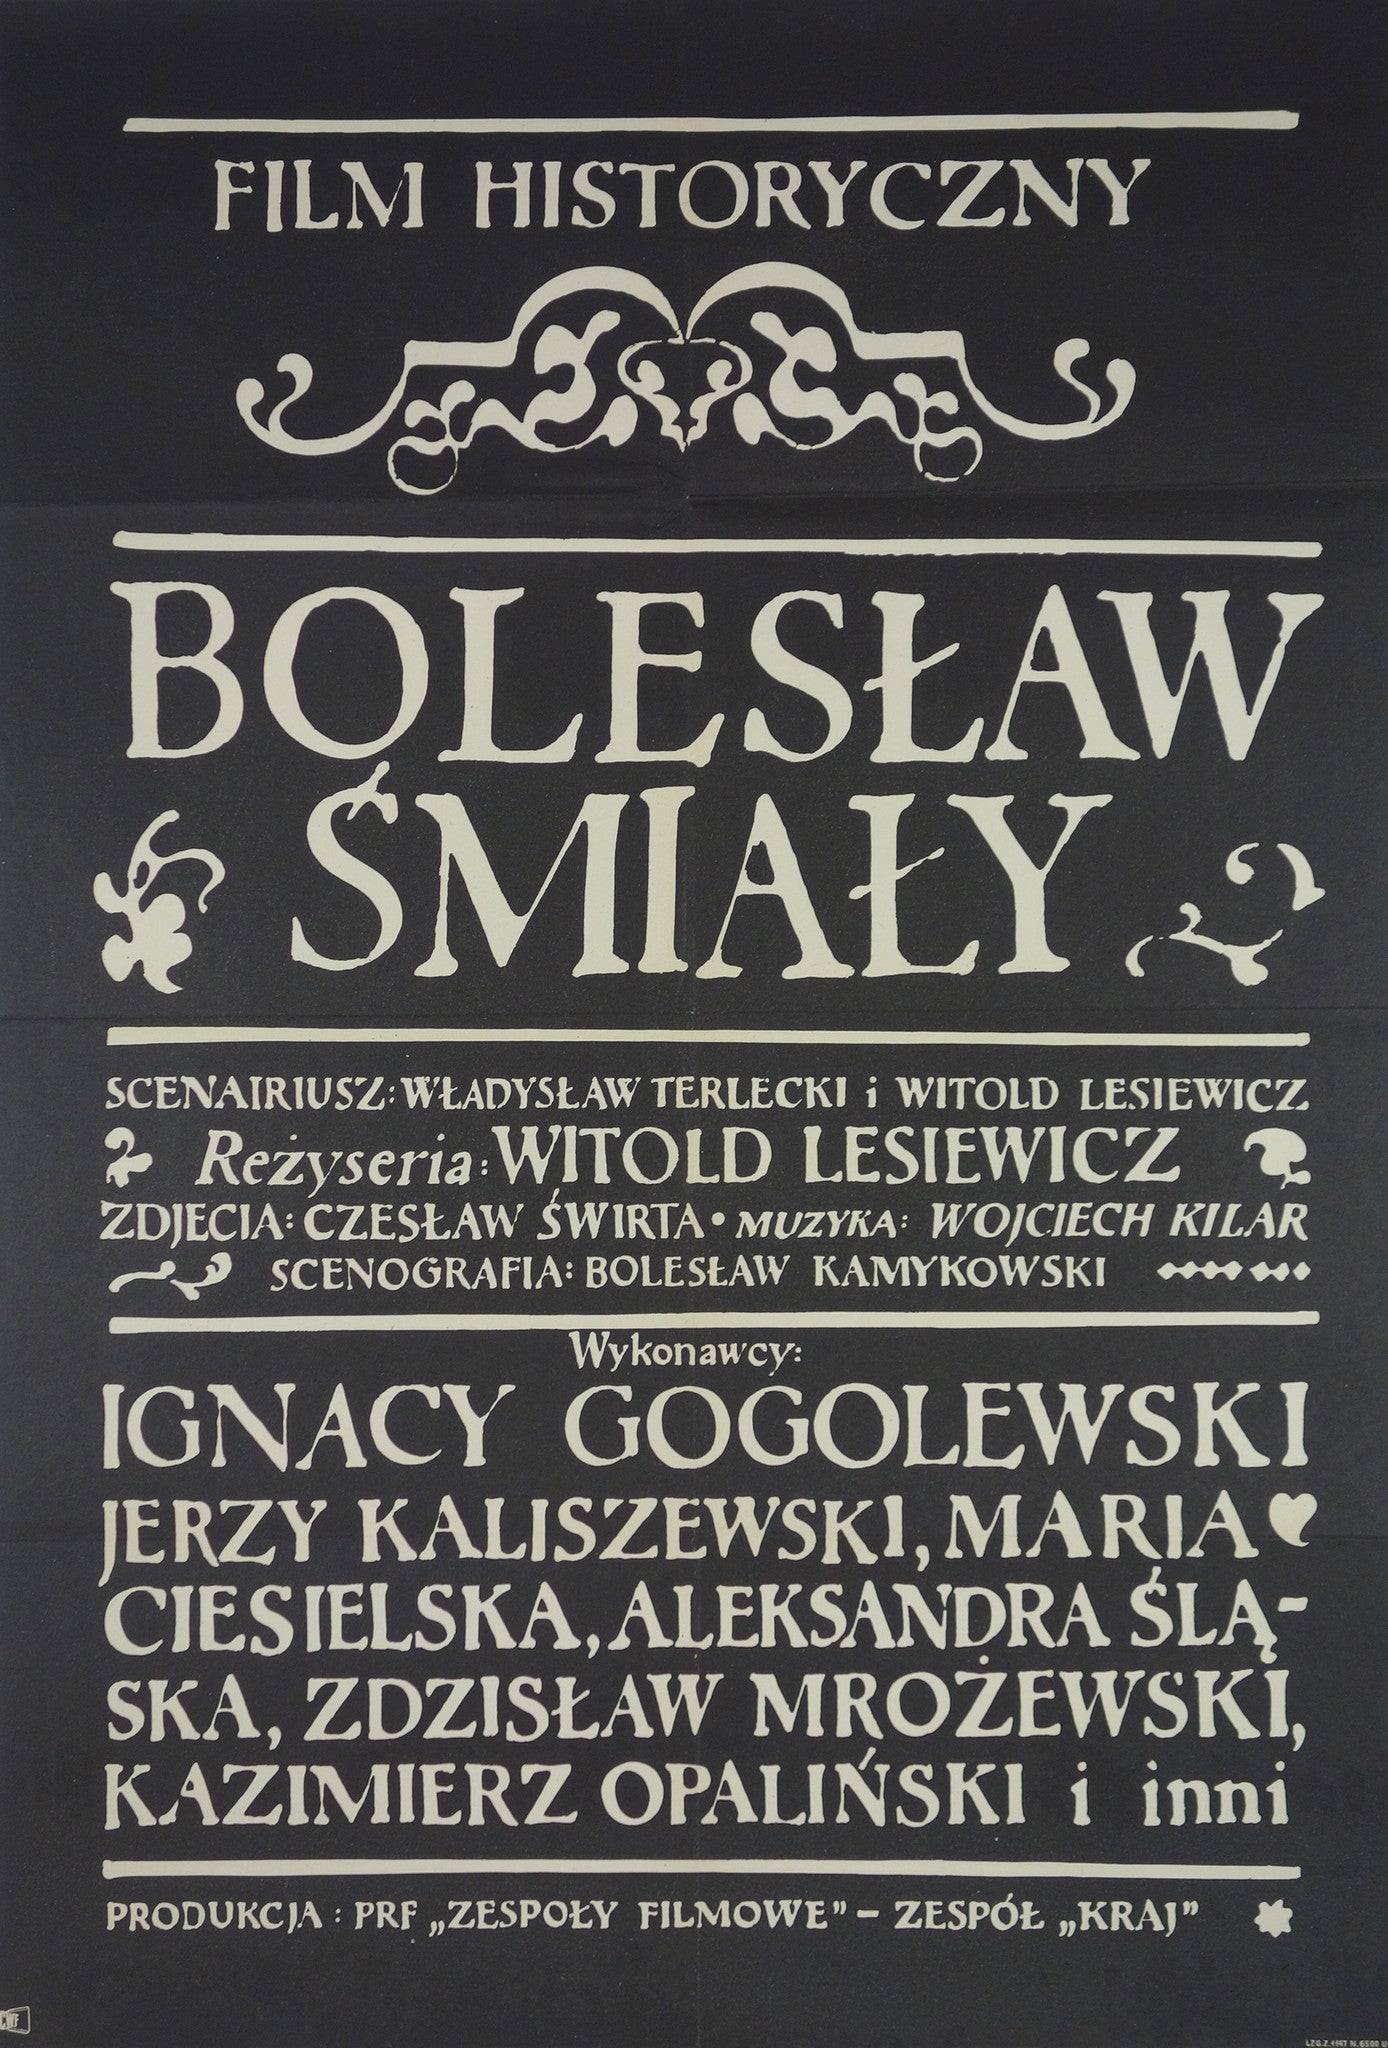 Boleslaw Smialy